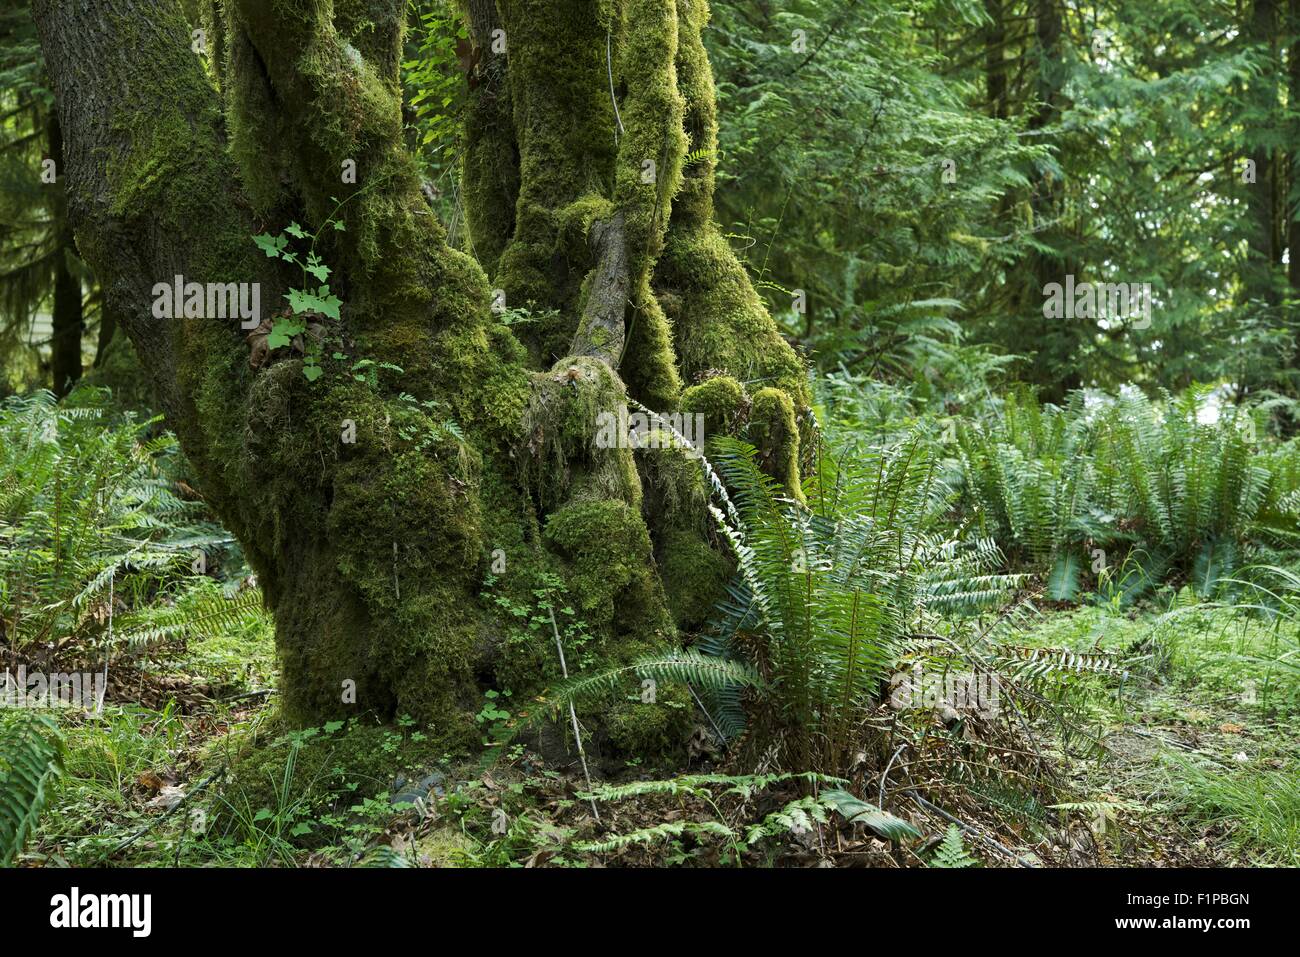 Mossy albero nella foresta pluviale. Lo scenario della foresta pluviale. Stato di Washington natura raccolta di fotografie. Foto Stock